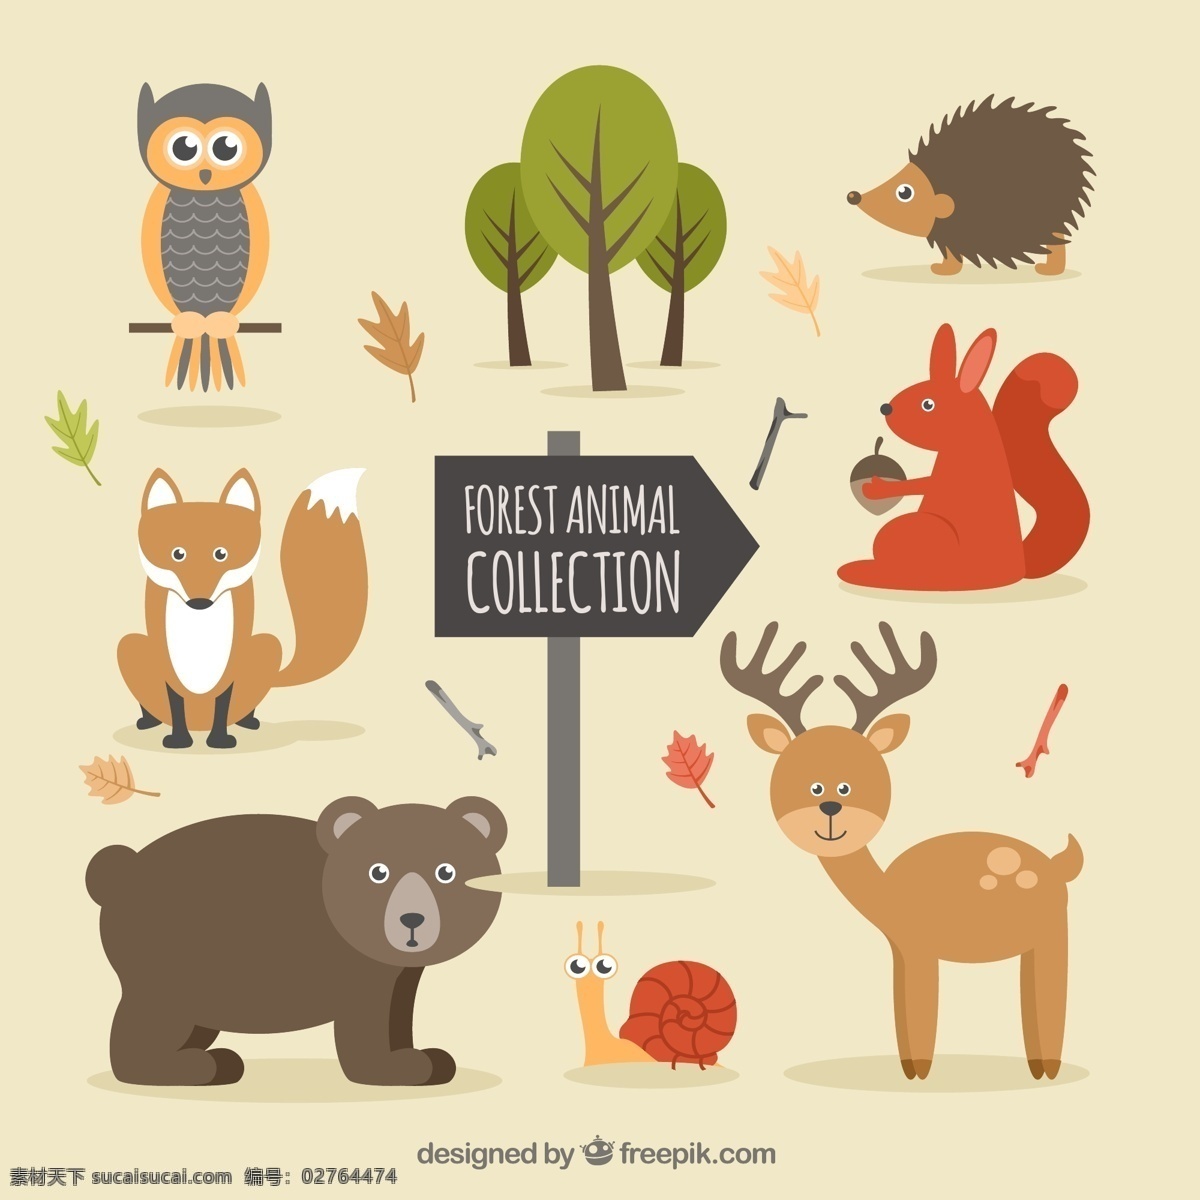 卡通 森林 中 动物 矢量 熊 树 刺猬 狐狸 矢量素材 设计素材